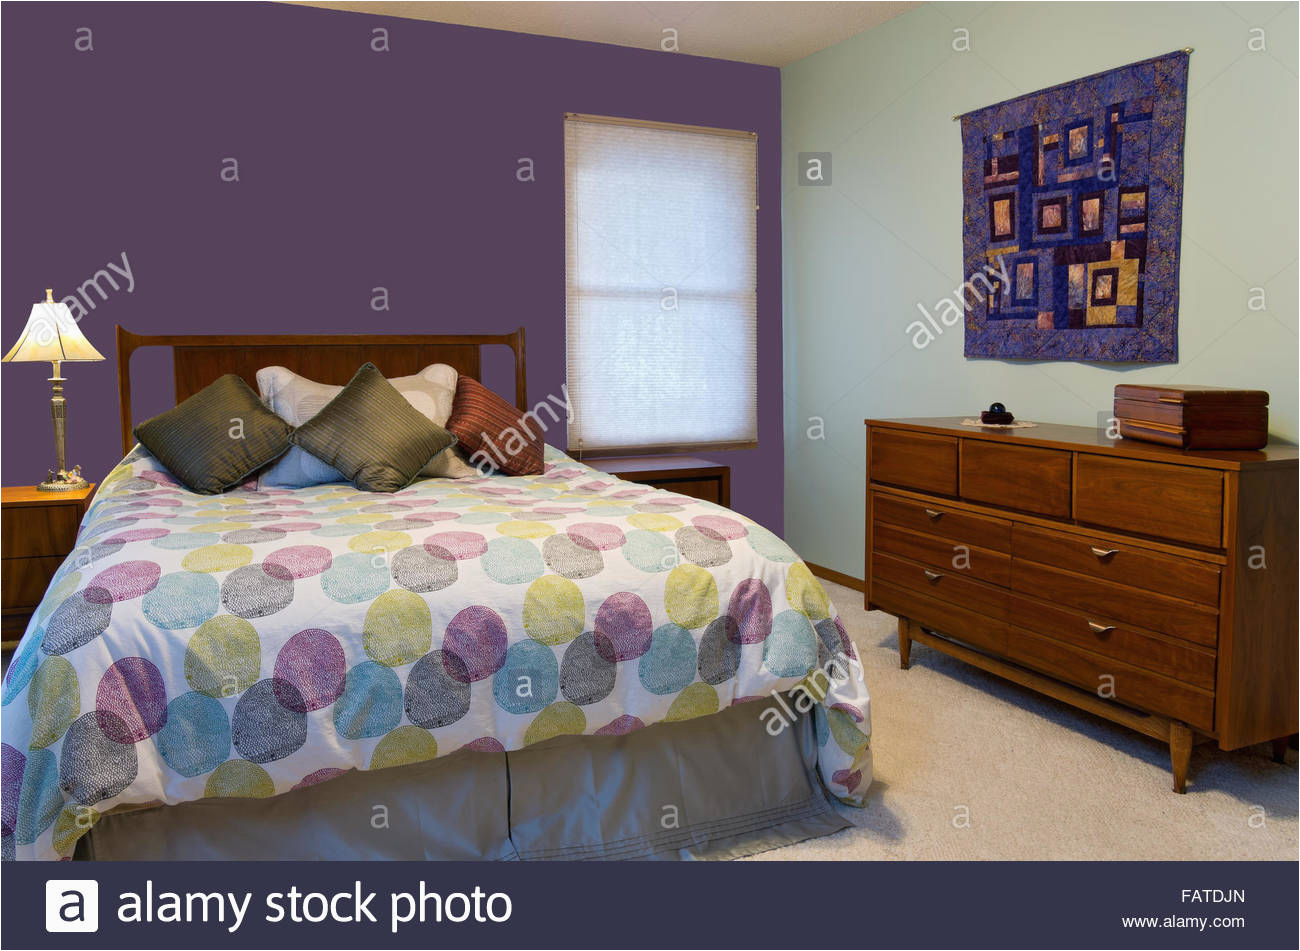 deko kommode schlafzimmer mit schlafzimmer innenraum mit lila und grune wande lampe 40 und schlafzimmer innenraum mit lila und grune wande lampe kommode bunte kissen und troster dekorieren queensize b